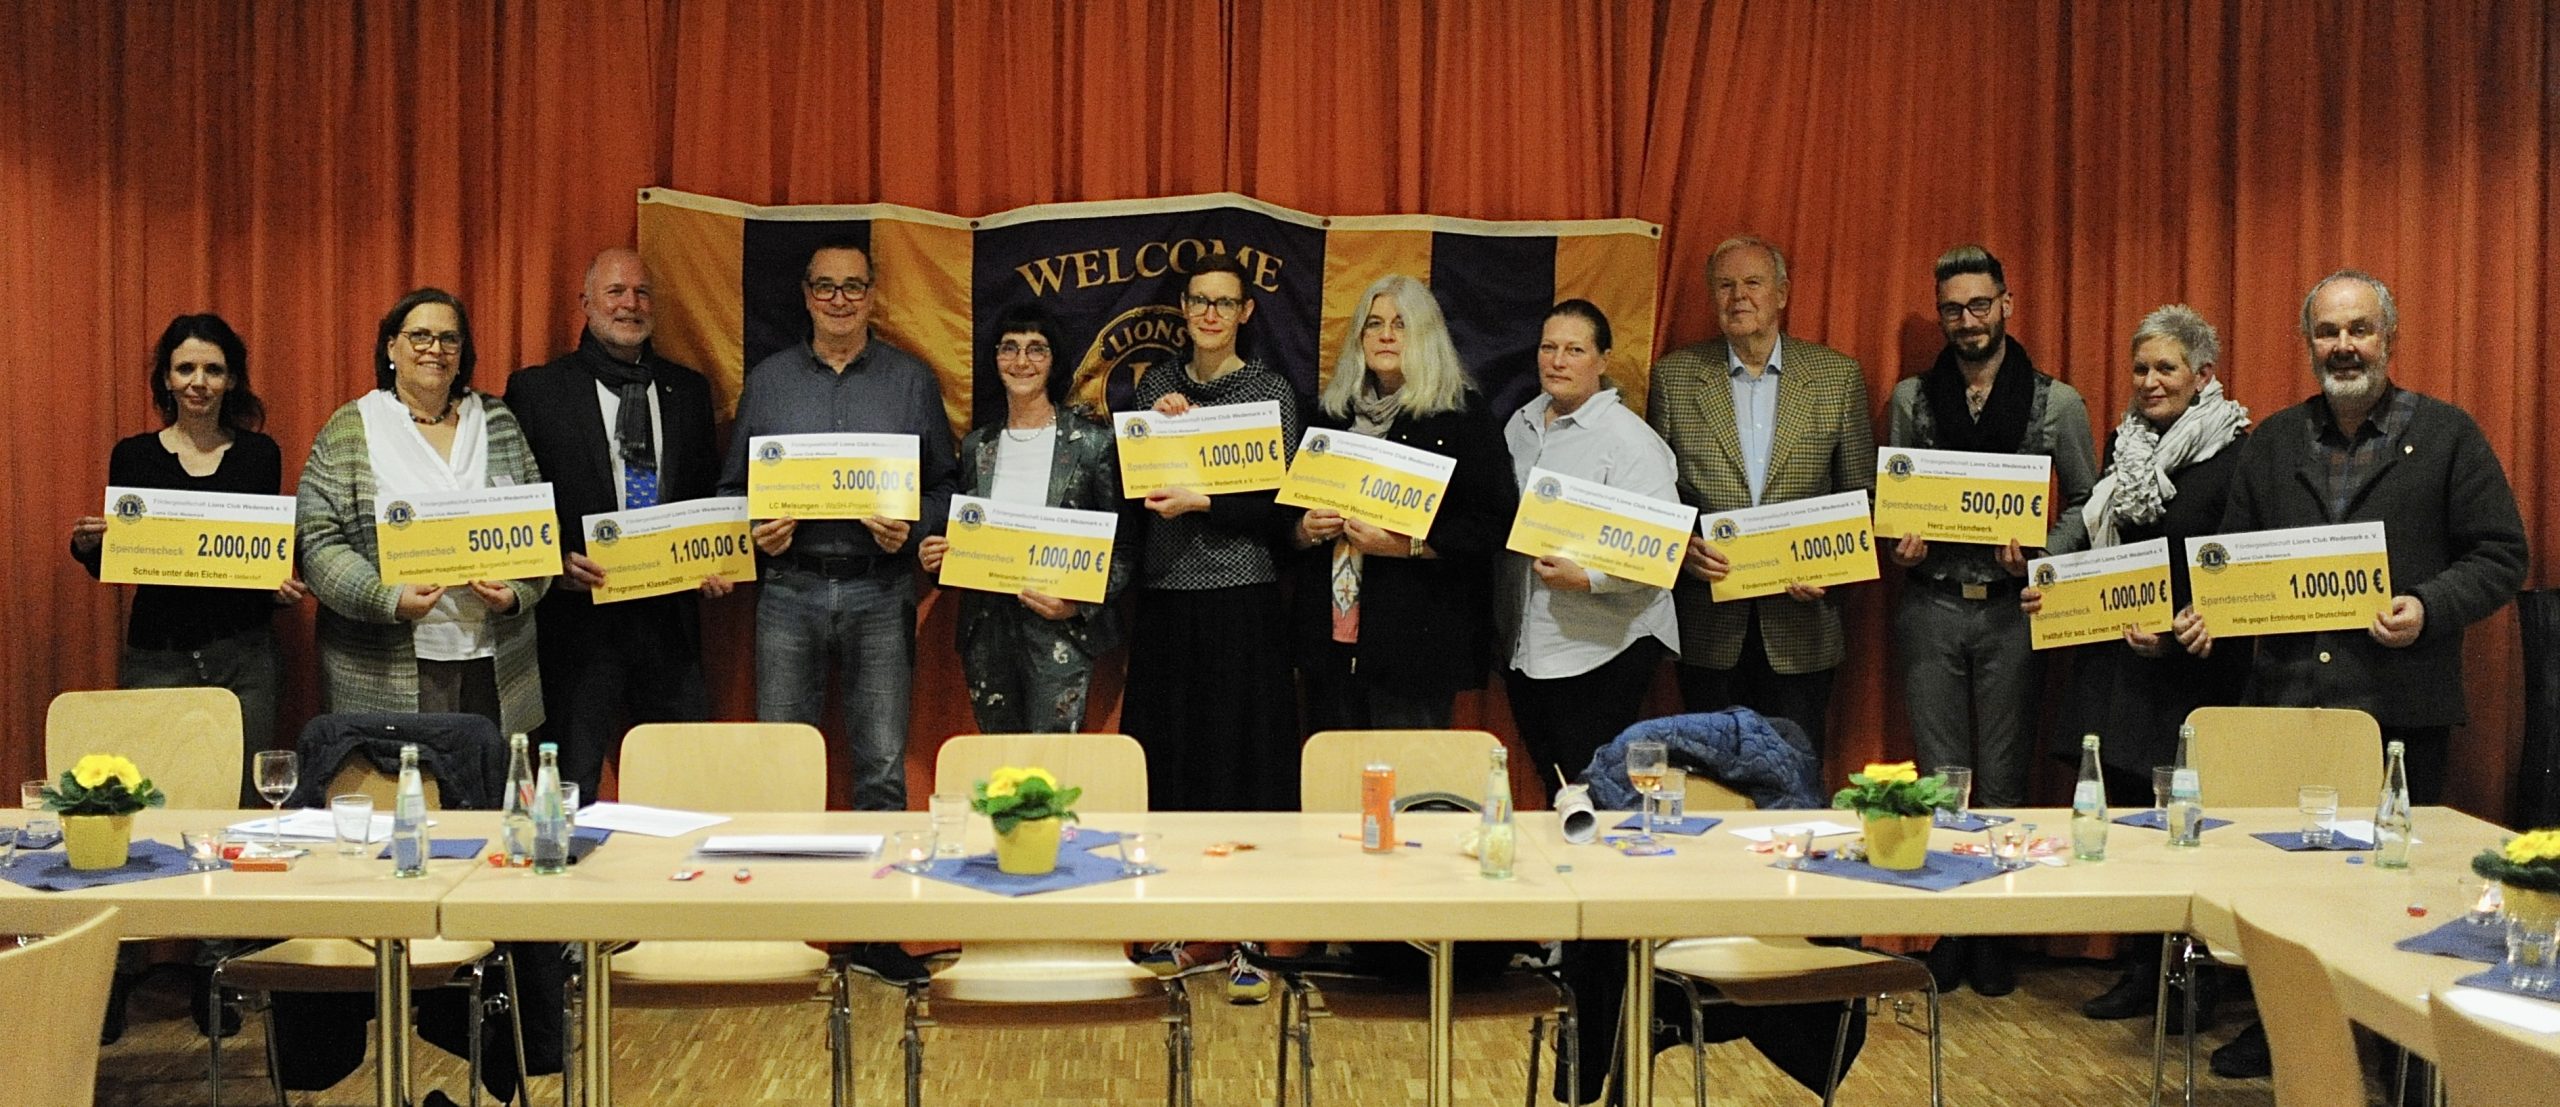 Lions Club Wedemark unterstützt soziale Projekte mit 13.600 Euro